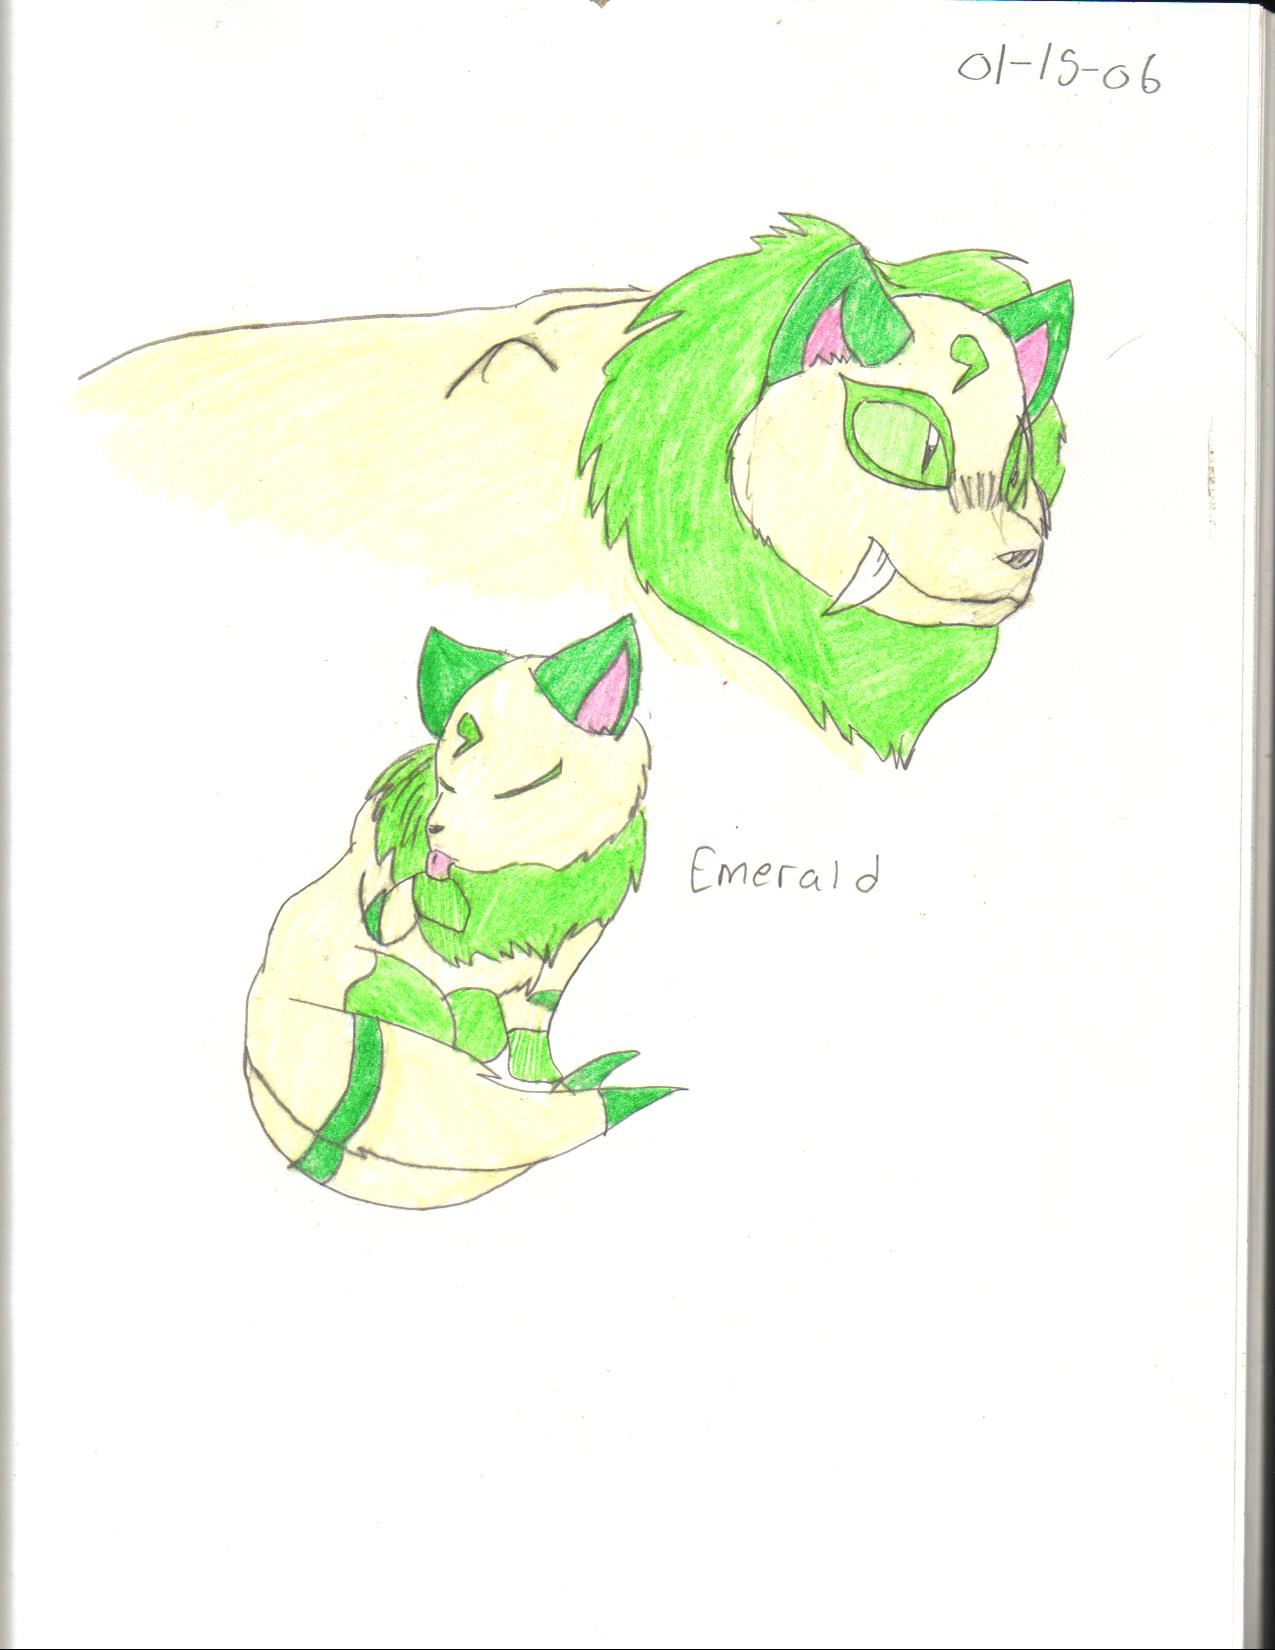 Emerald by crocdragon89